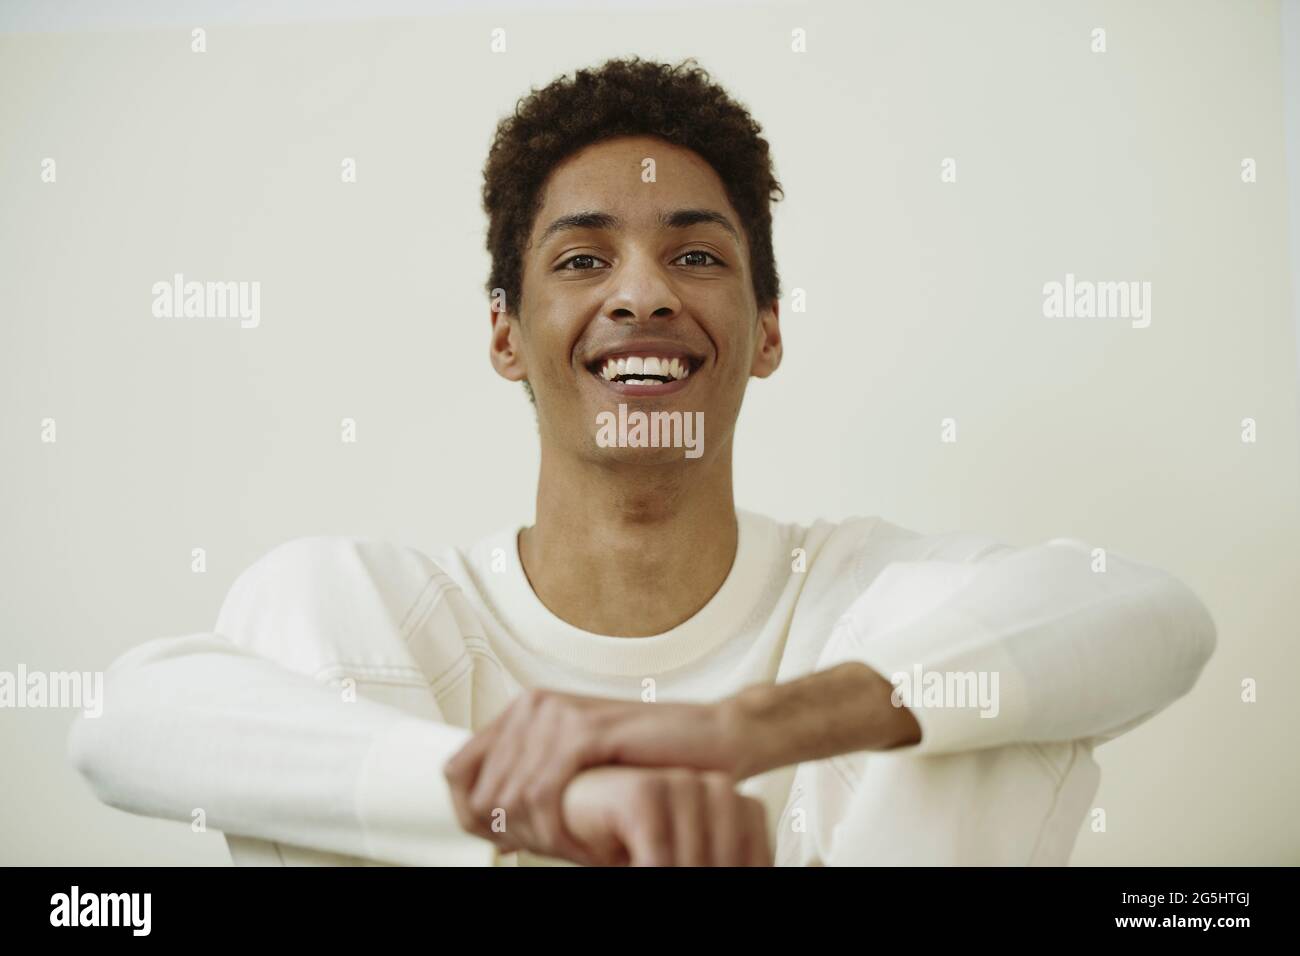 Portrait d'un jeune homme joyeux sur fond blanc Banque D'Images